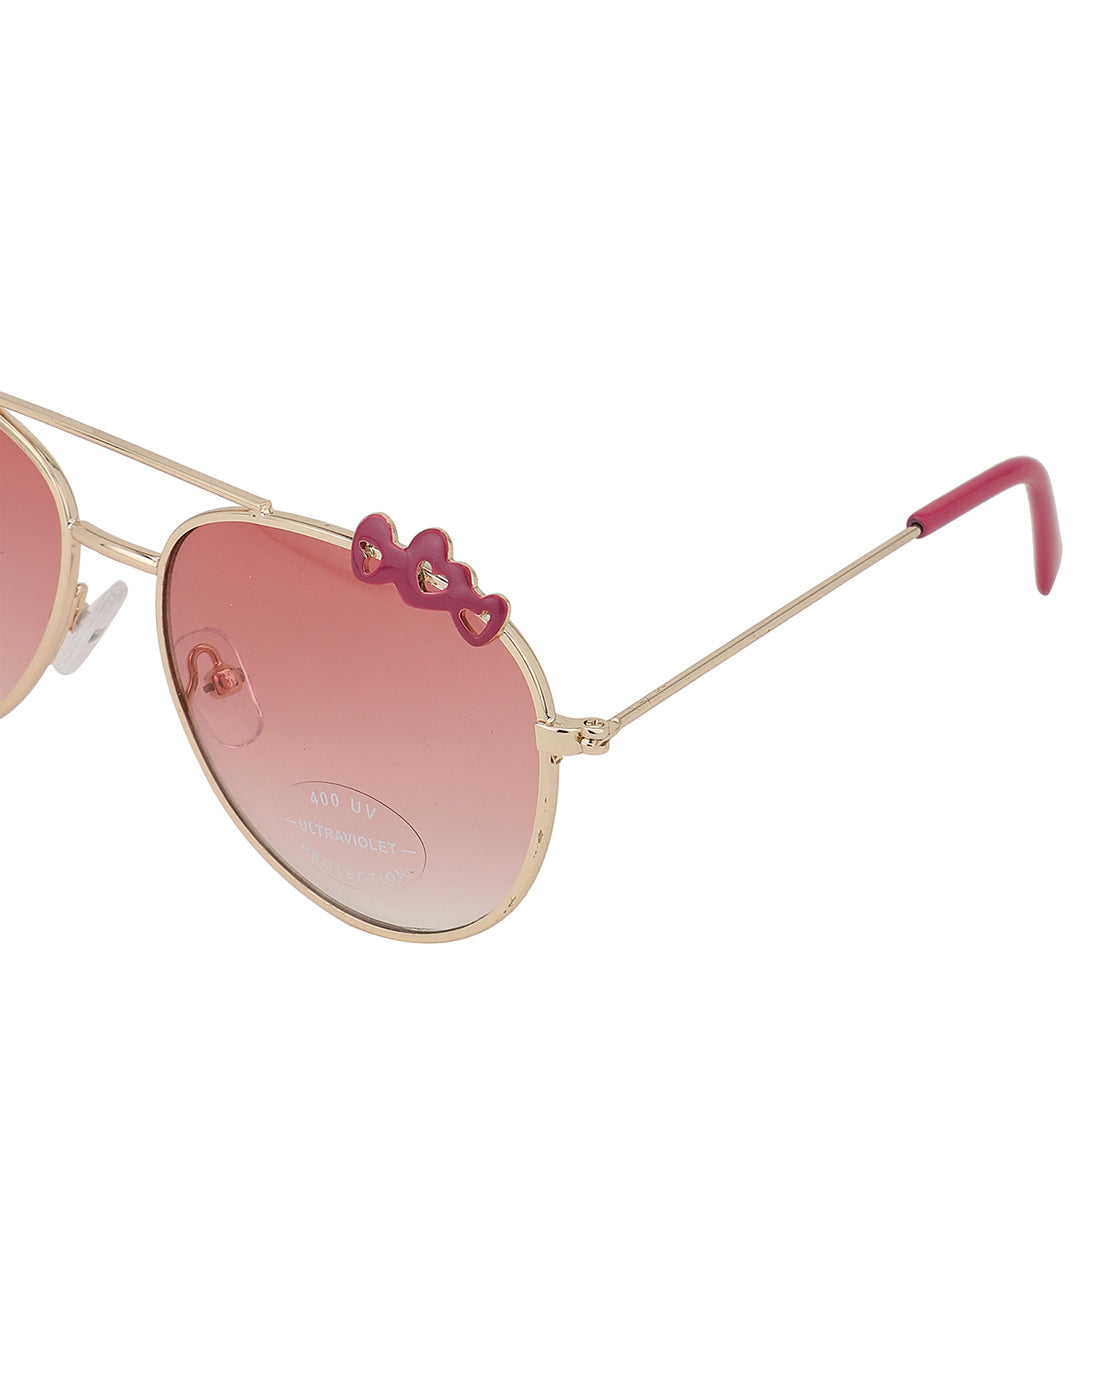 Carlton London Pink Lens &amp; Gold-Toned Aviator Sunglasses Uv Protected Lens For Girl